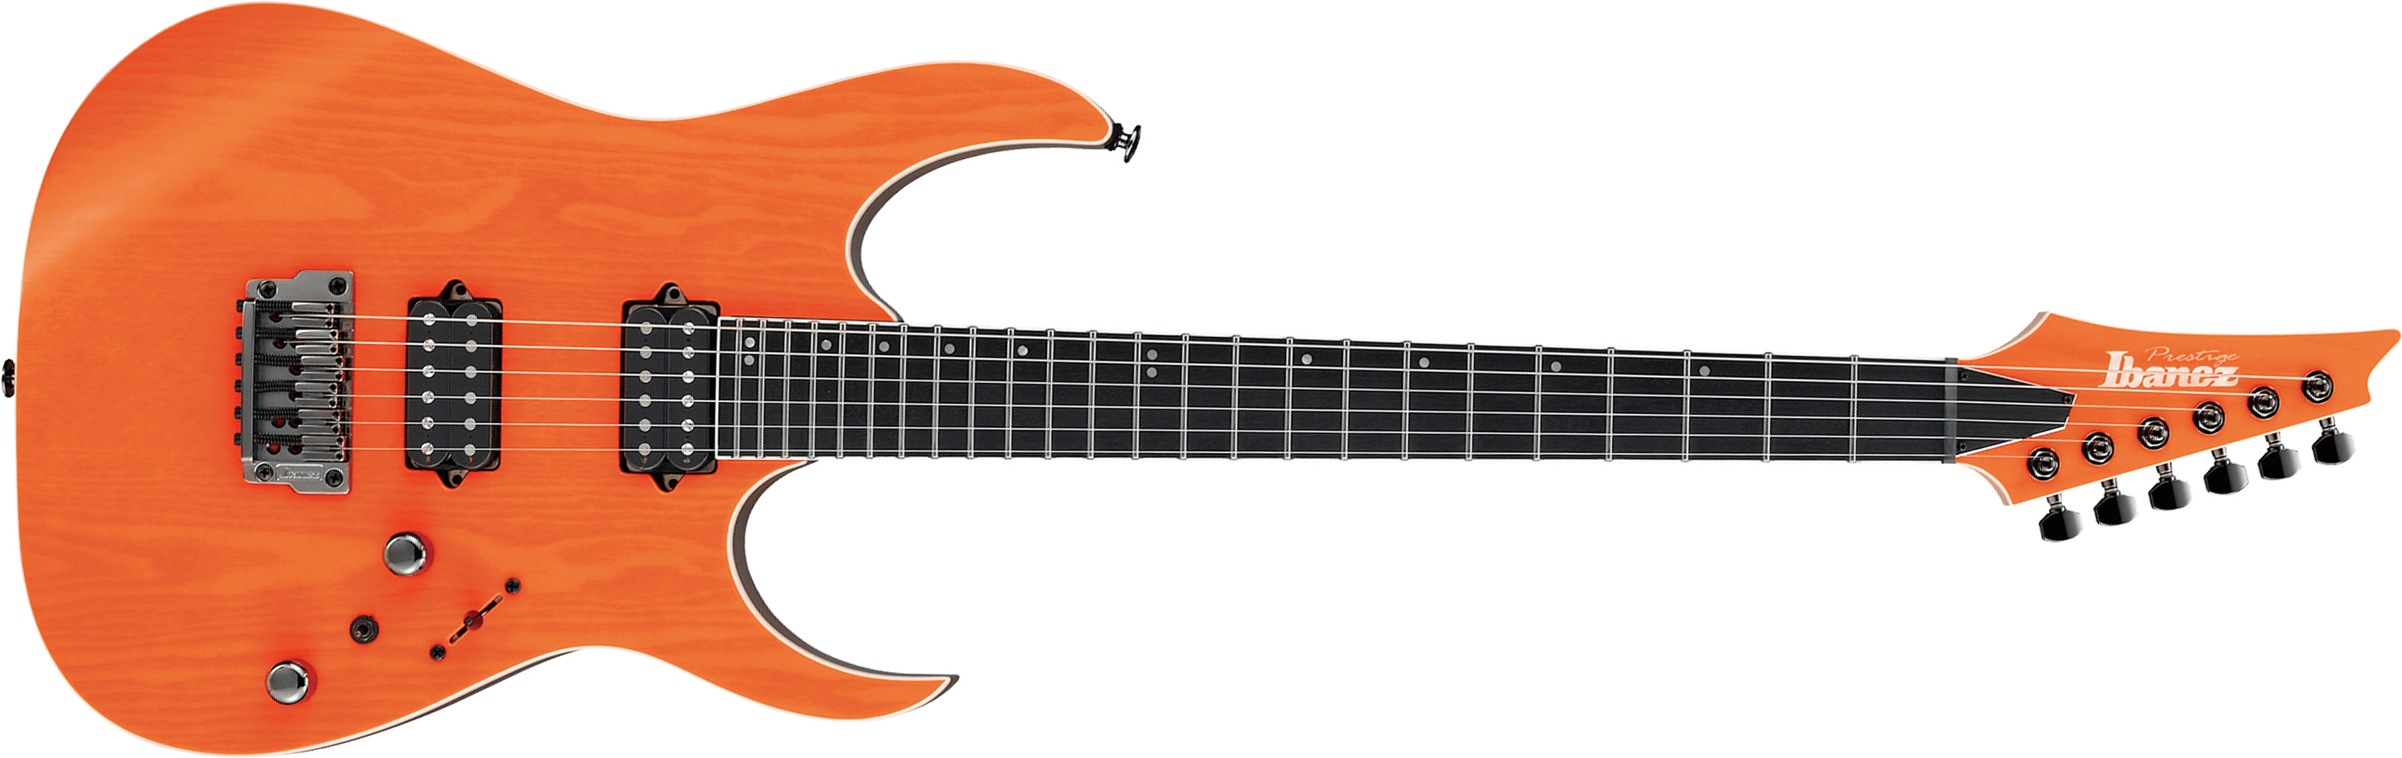 Ibanez Rgr5221 Tfr Prestige Jap Ht Bare Knuckle Hh Eb - Transparent Fluorescent Orange - Guitare Électrique Forme Str - Main picture